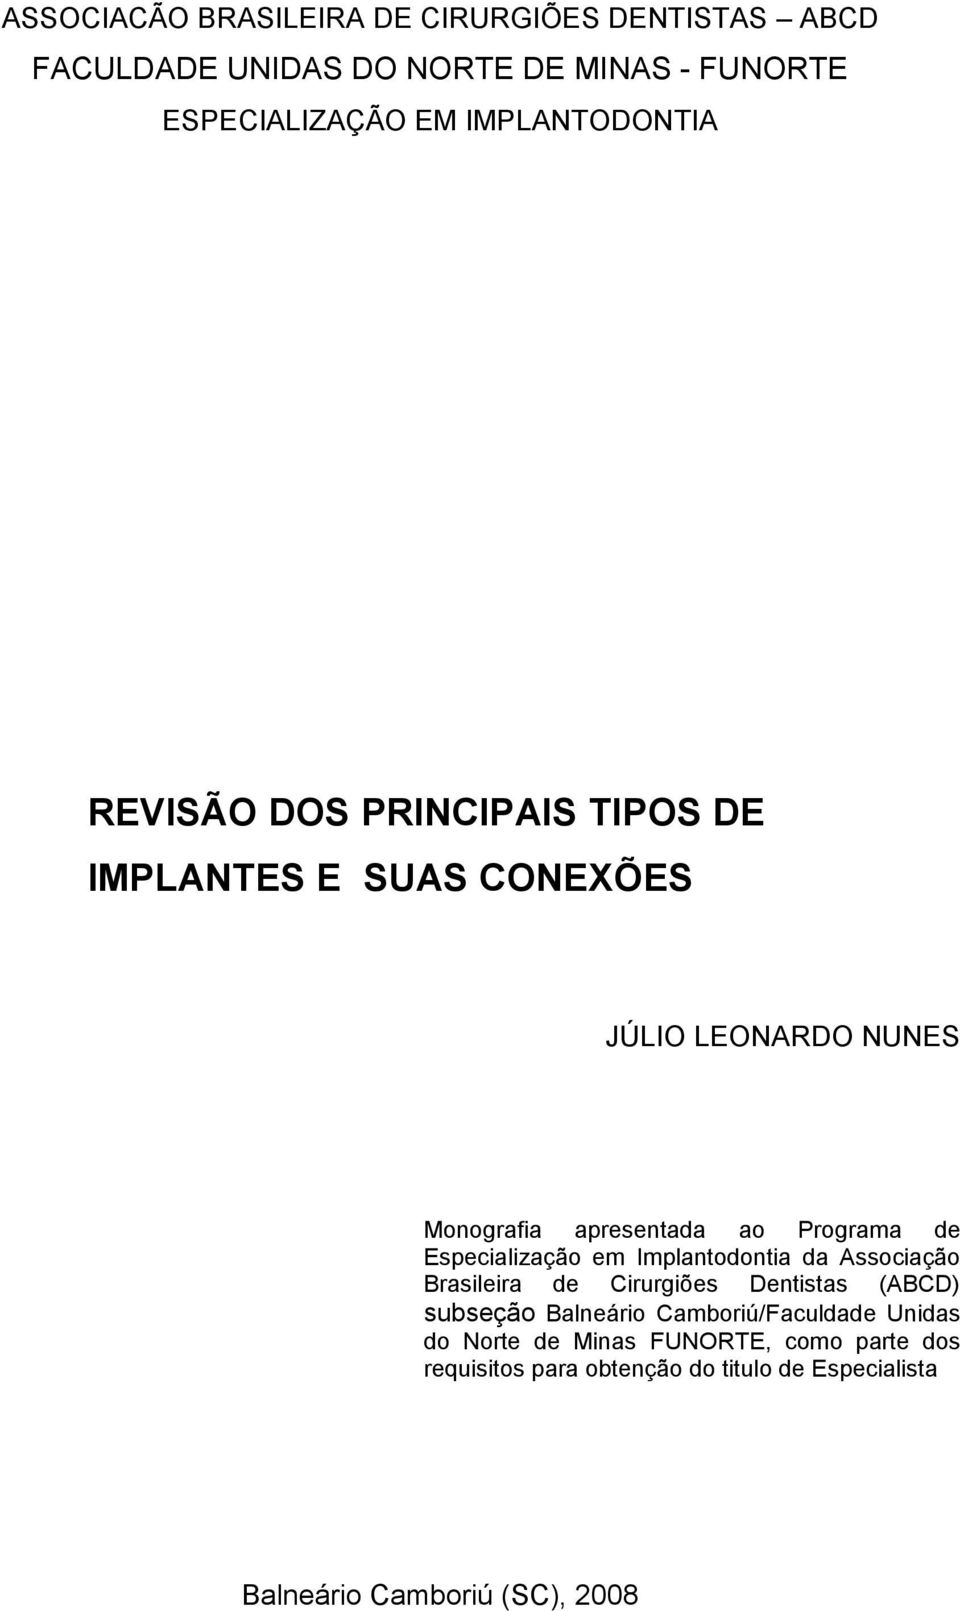 Programa de Especialização em Implantodontia da Associação Brasileira de Cirurgiões Dentistas (ABCD) subseção Balneário